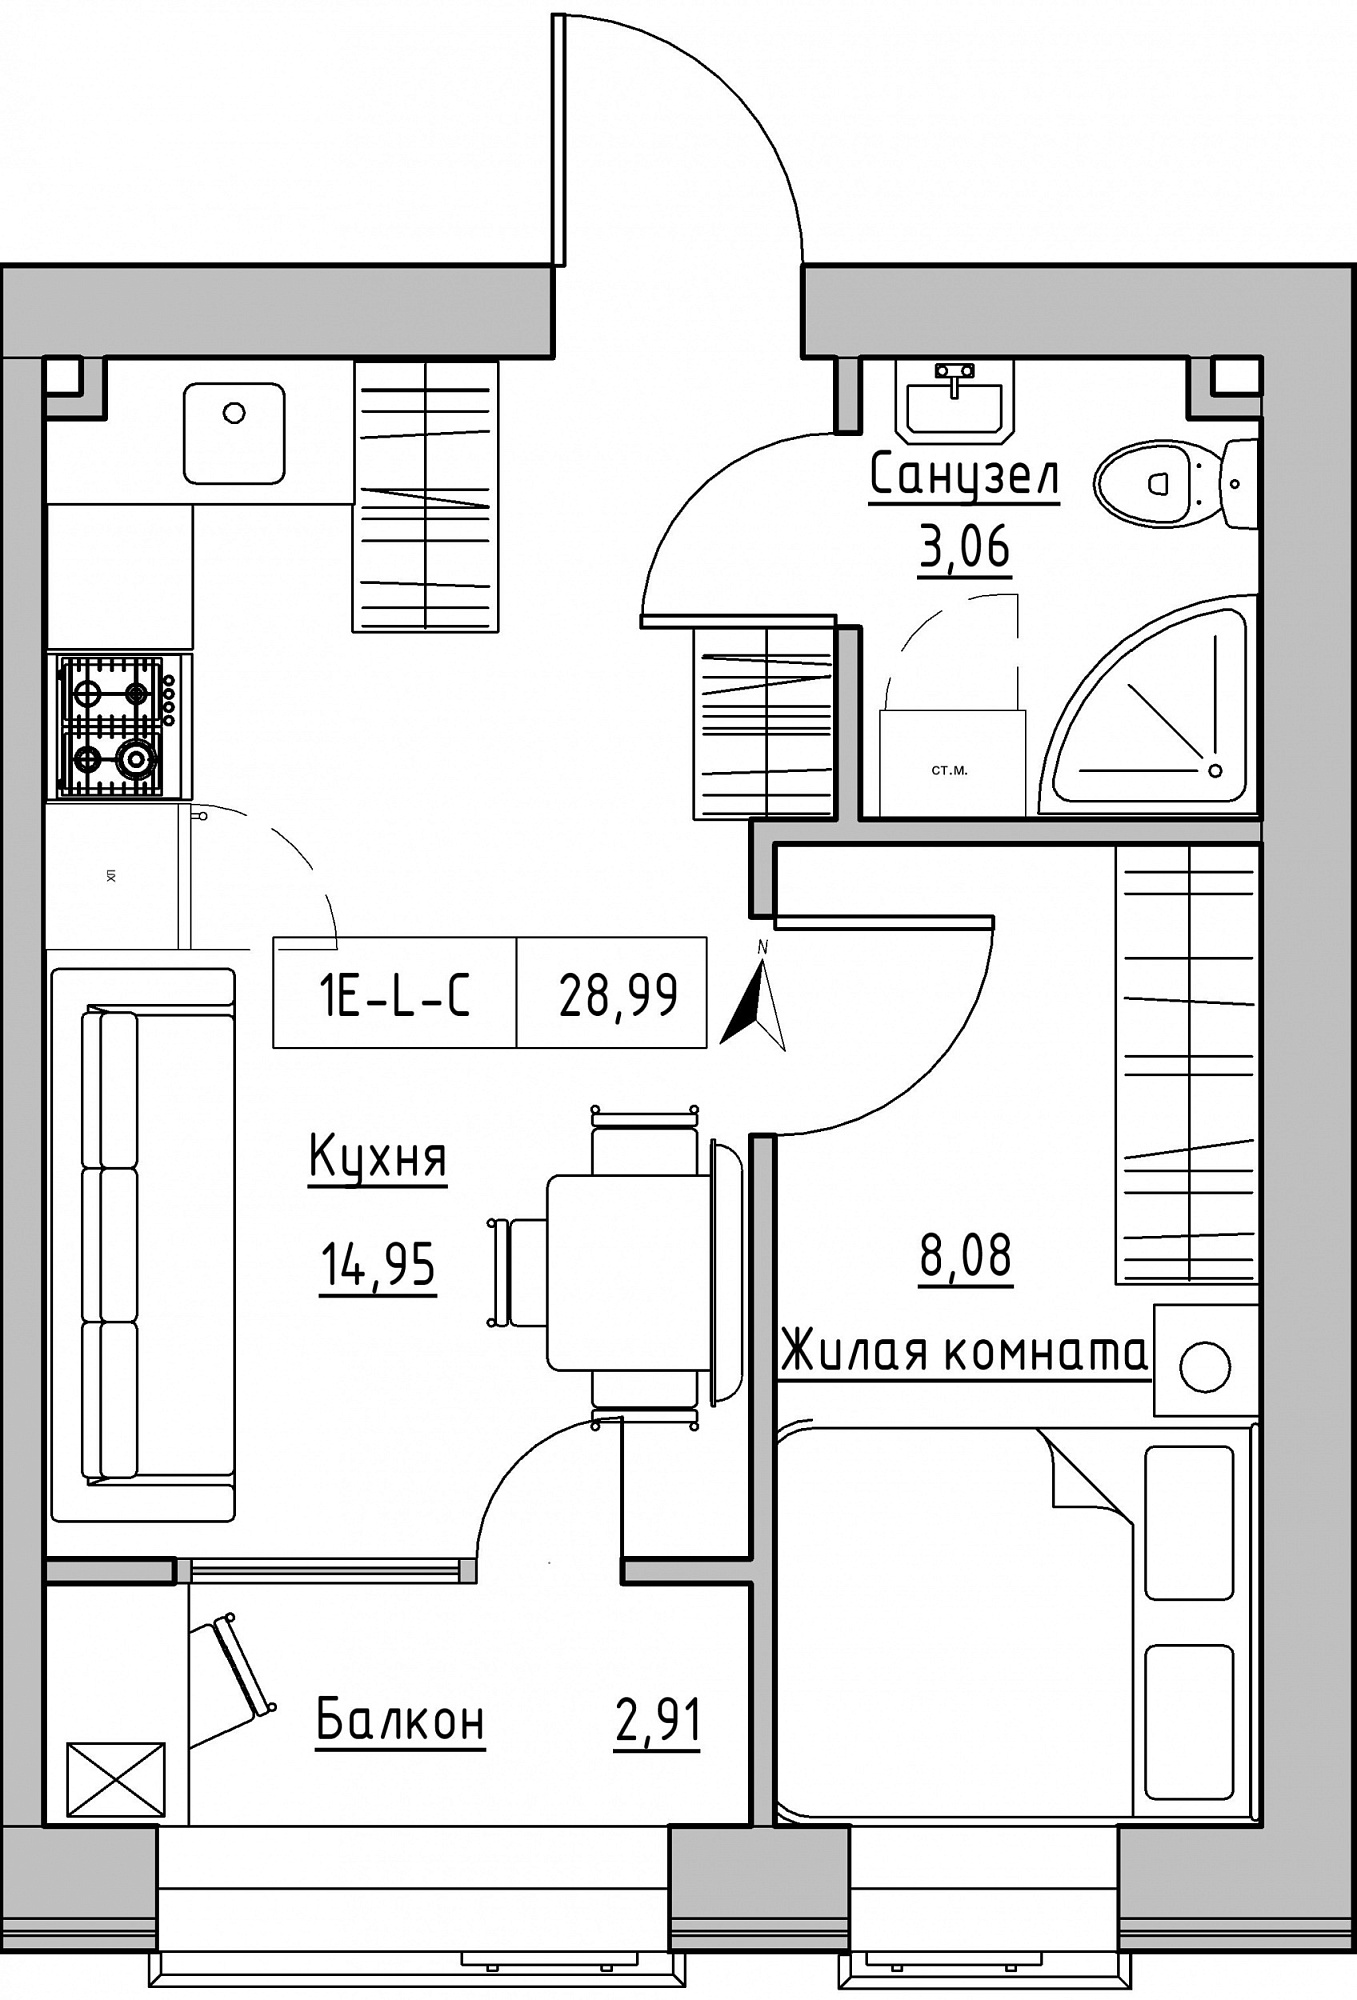 Планировка 1-к квартира площей 28.99м2, KS-019-03/0009.